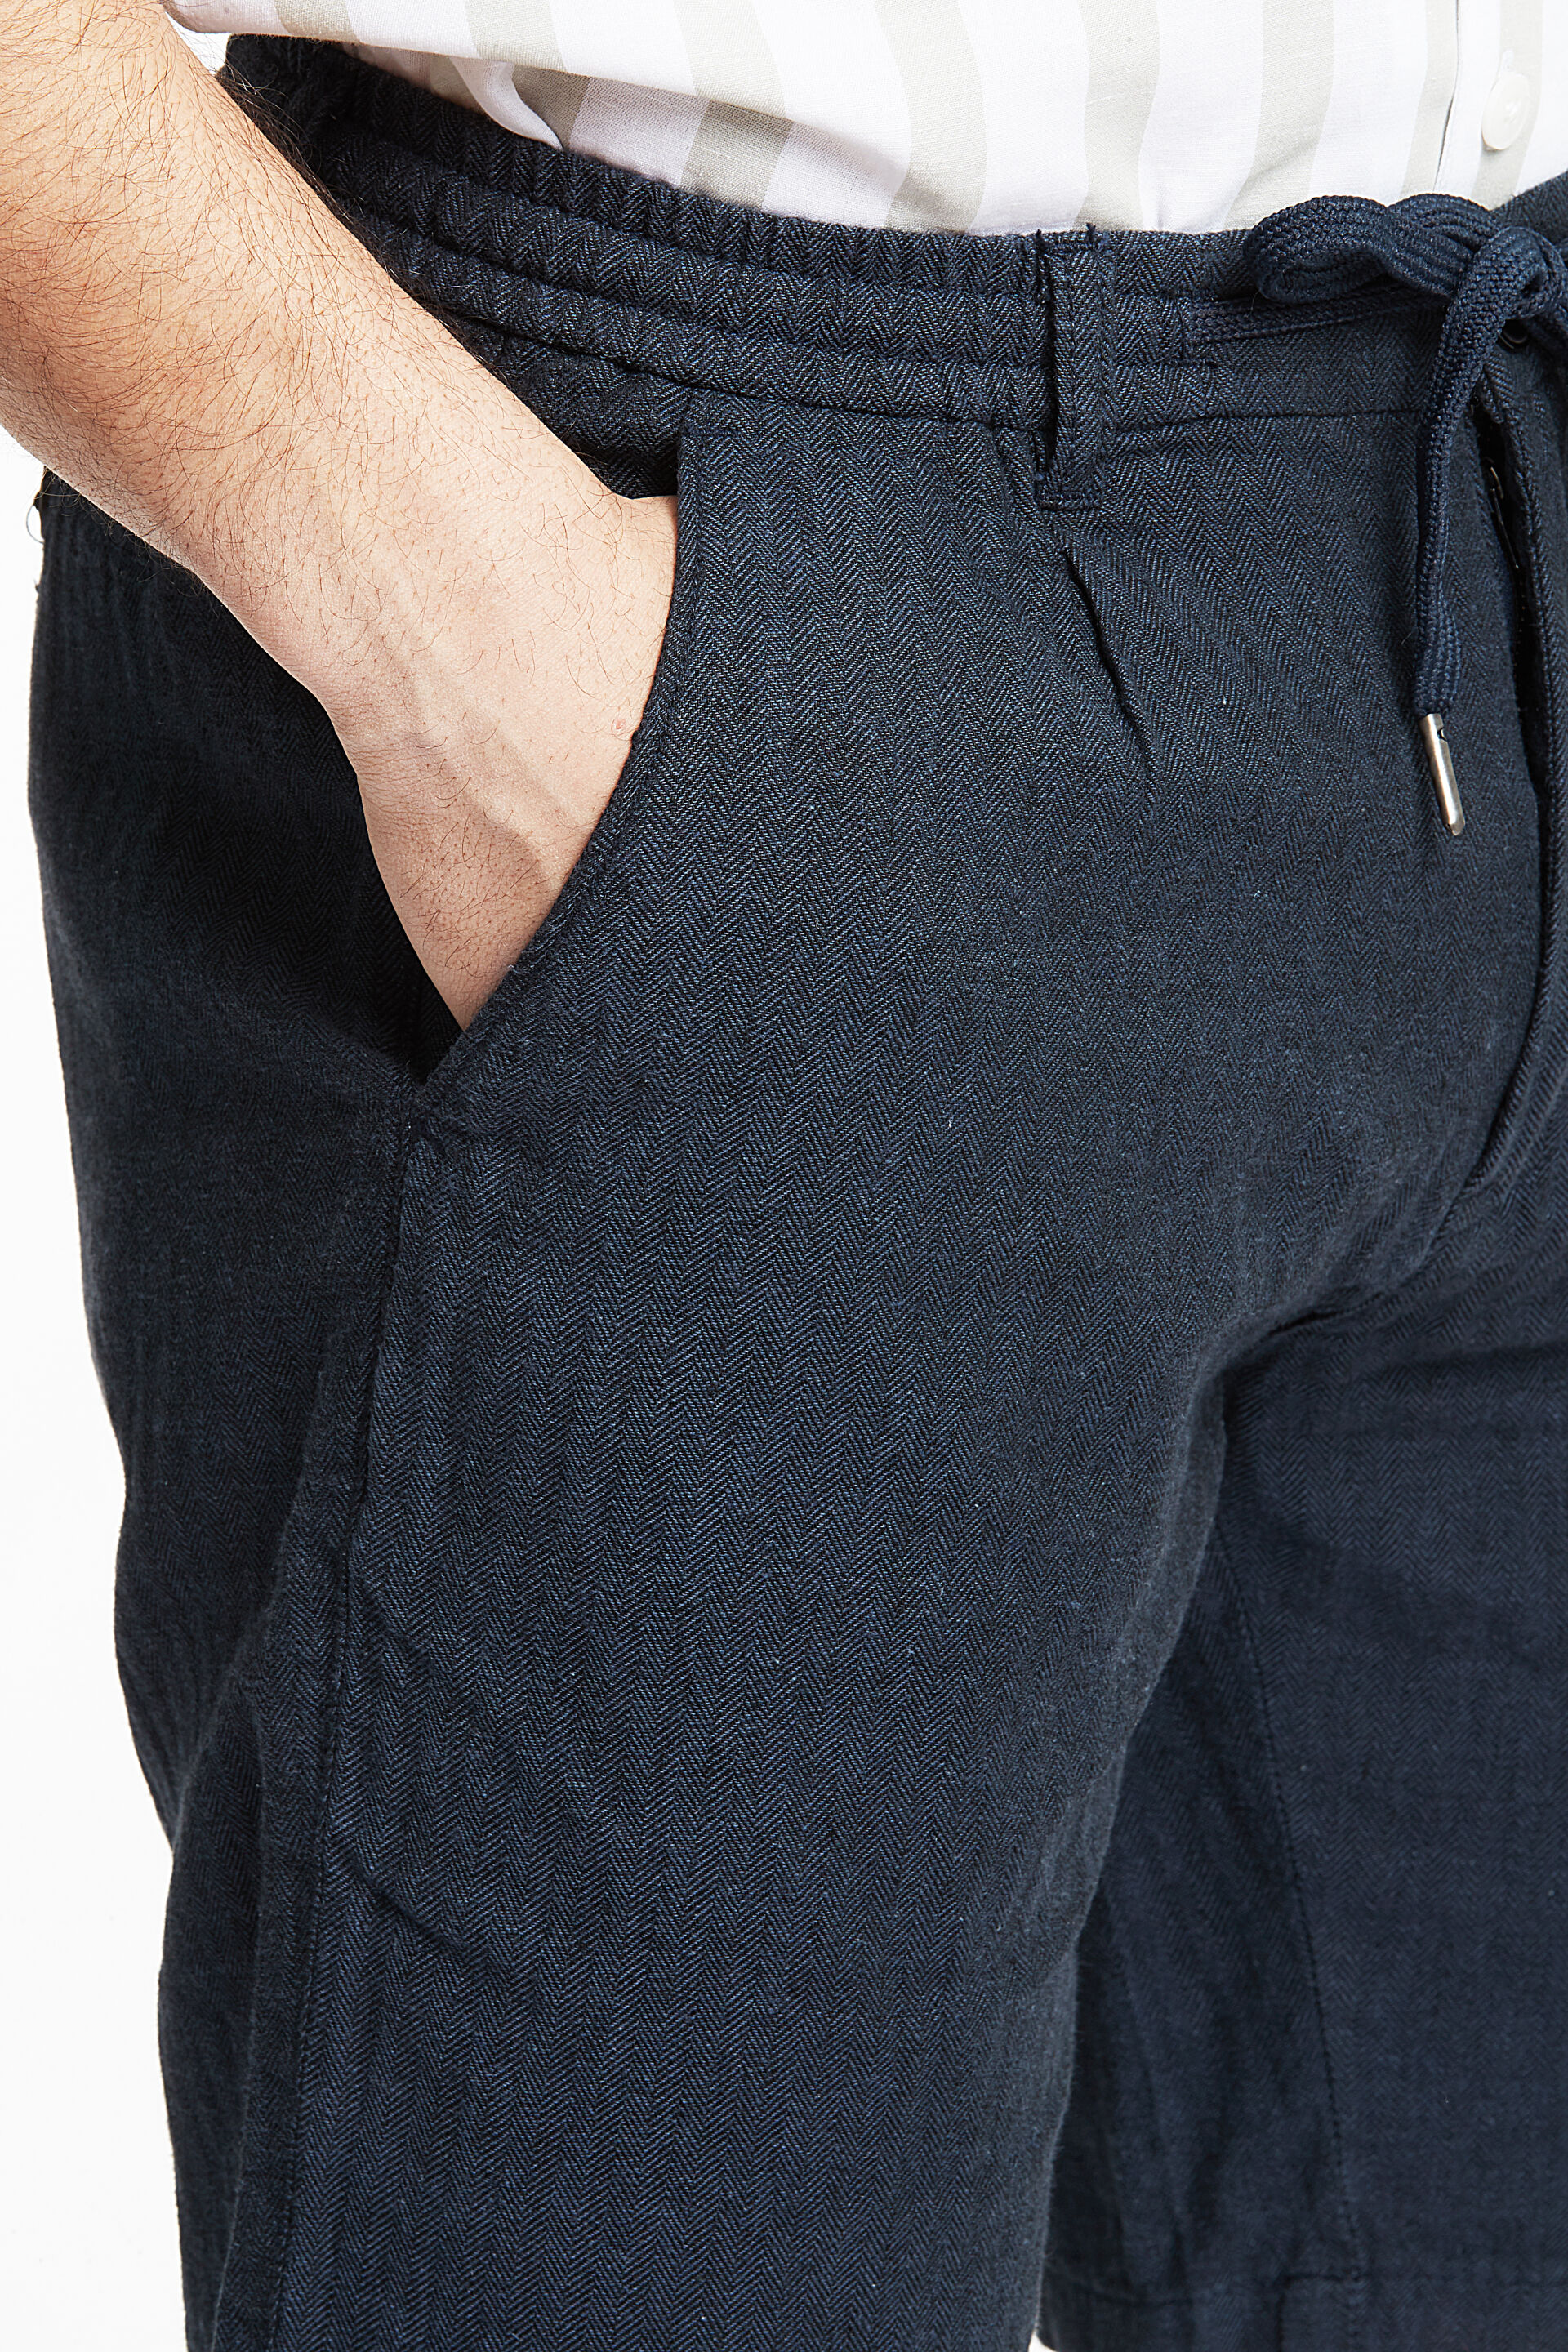 Linen shorts 30-505020